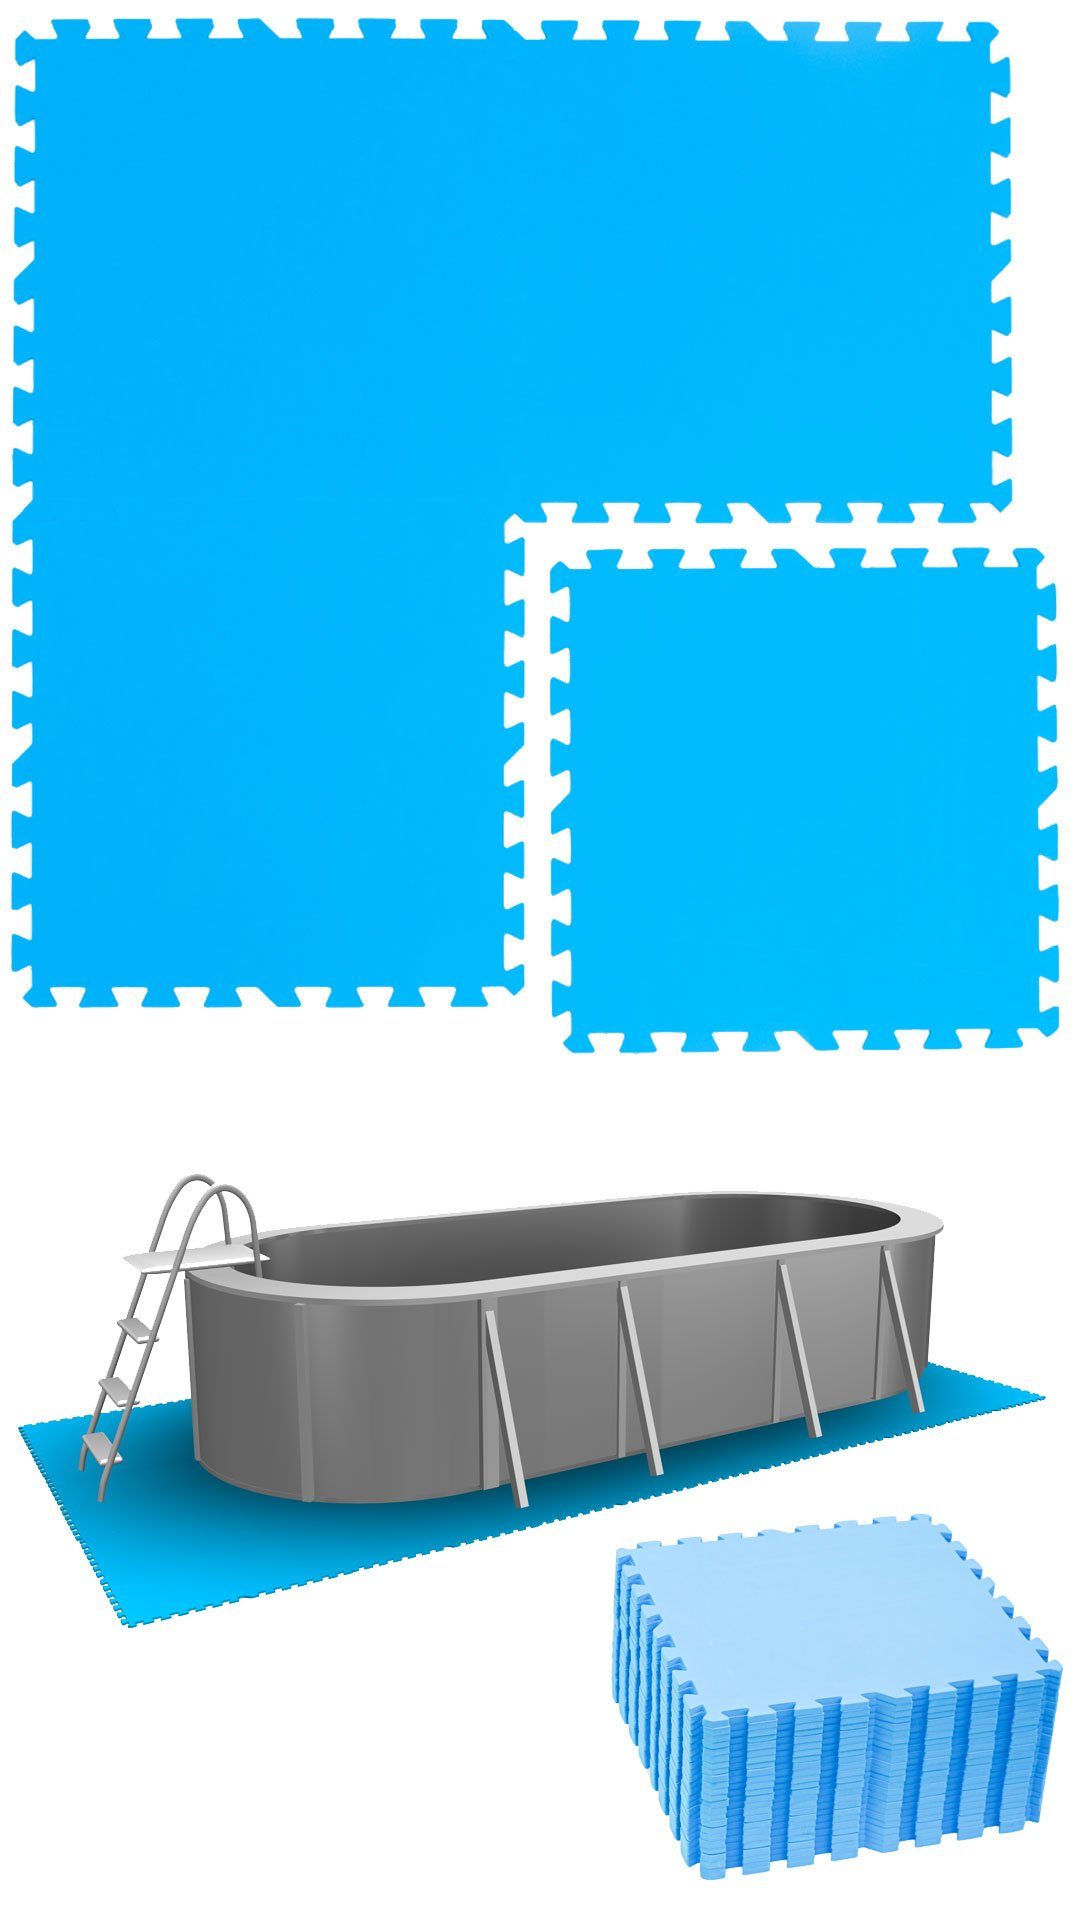 eyepower Bodenmatte Pool m² 5,6 24 50x50 Poolunterlage Blau Stecksystem Matten Set, erweiterbares EVA